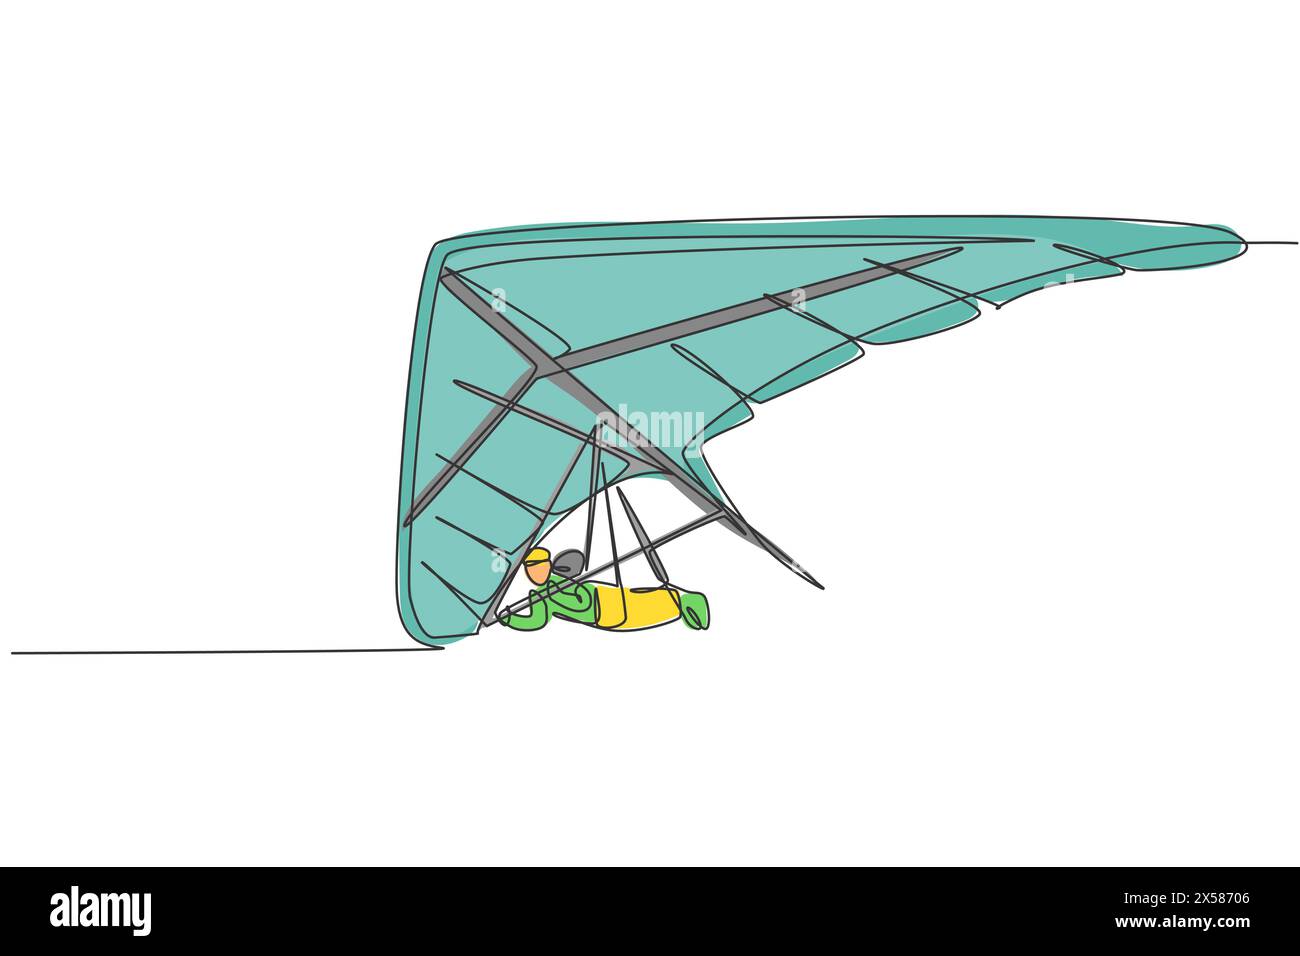 Eine einzelne Linienzeichnung des jungen sportlichen Mannes, der mit einem Fallschirm auf der grafischen Vektorillustration des Himmels fliegt. Extreme Sport-Konzept. Modern c Stock Vektor